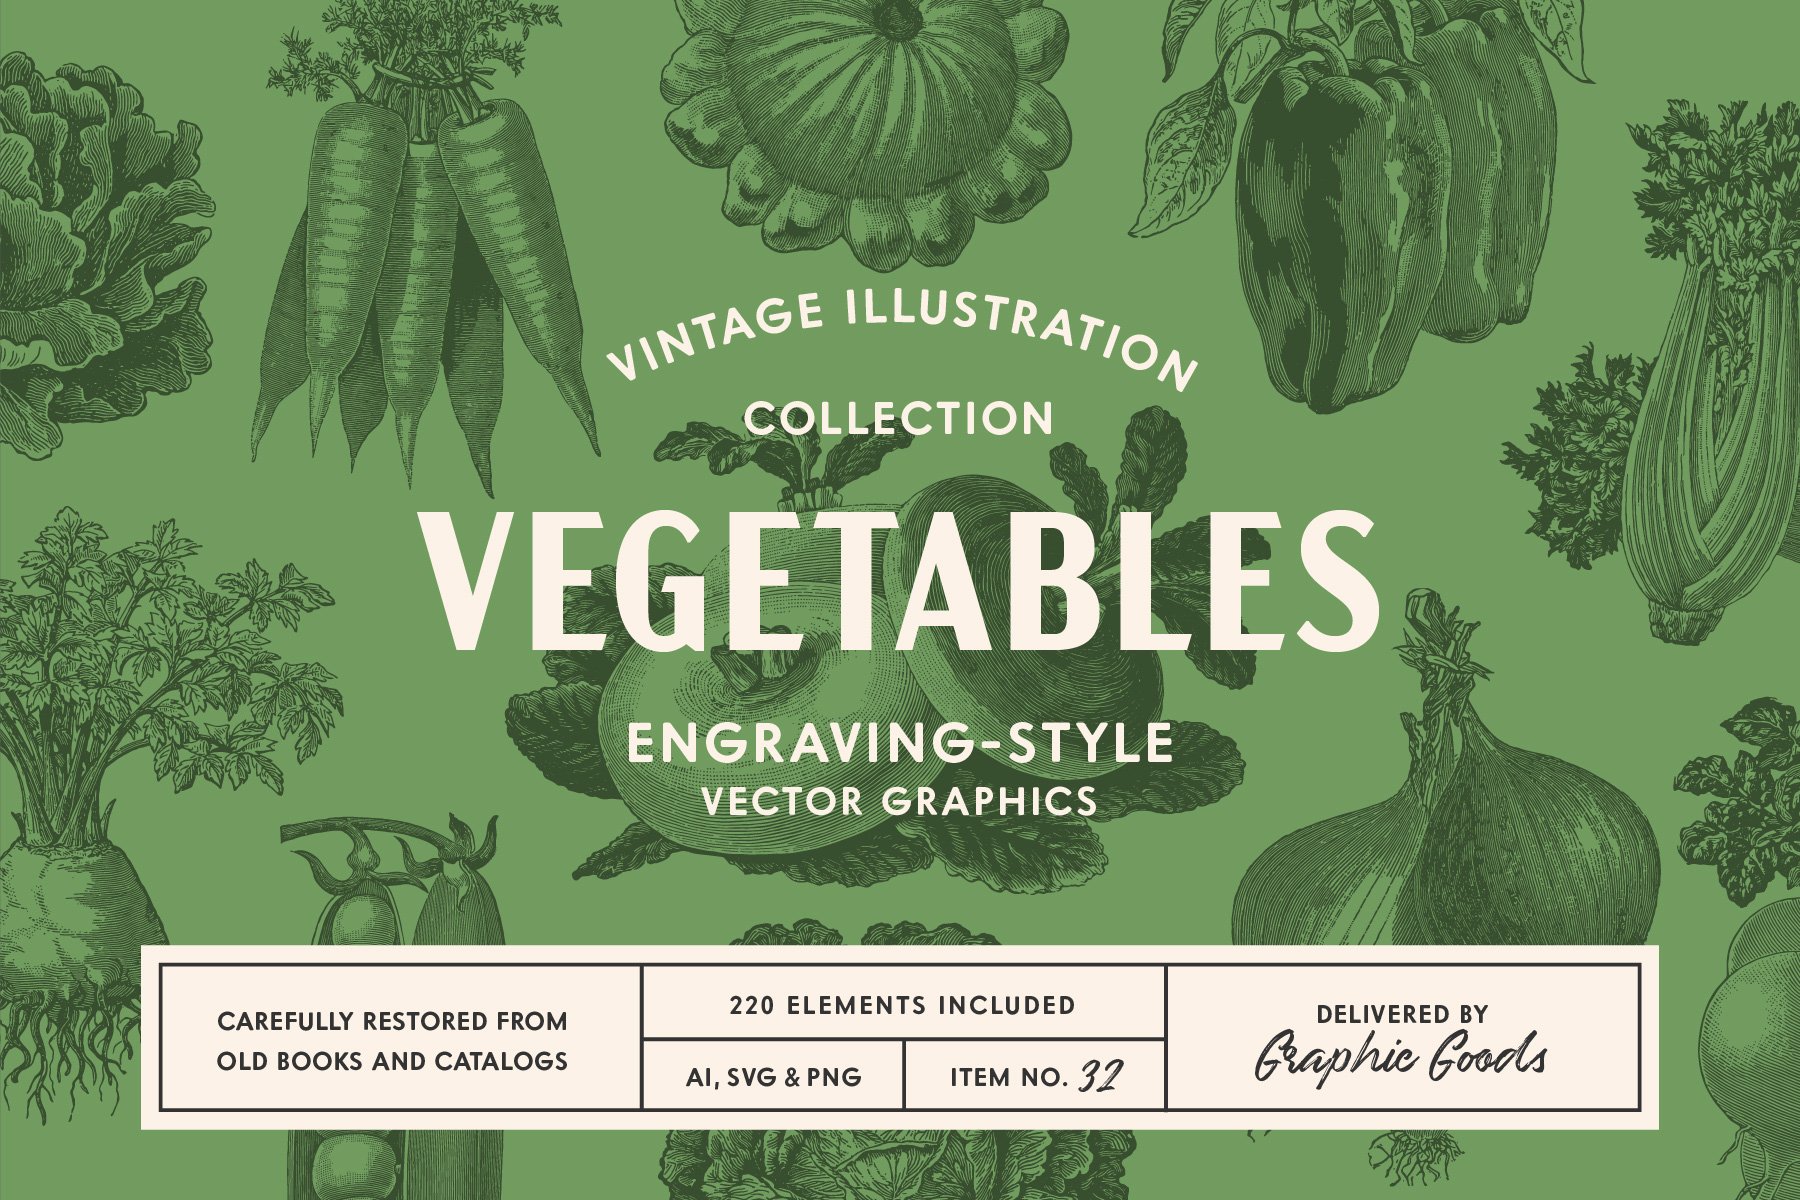 220 Vintage Vegetable Illustrations cover image.